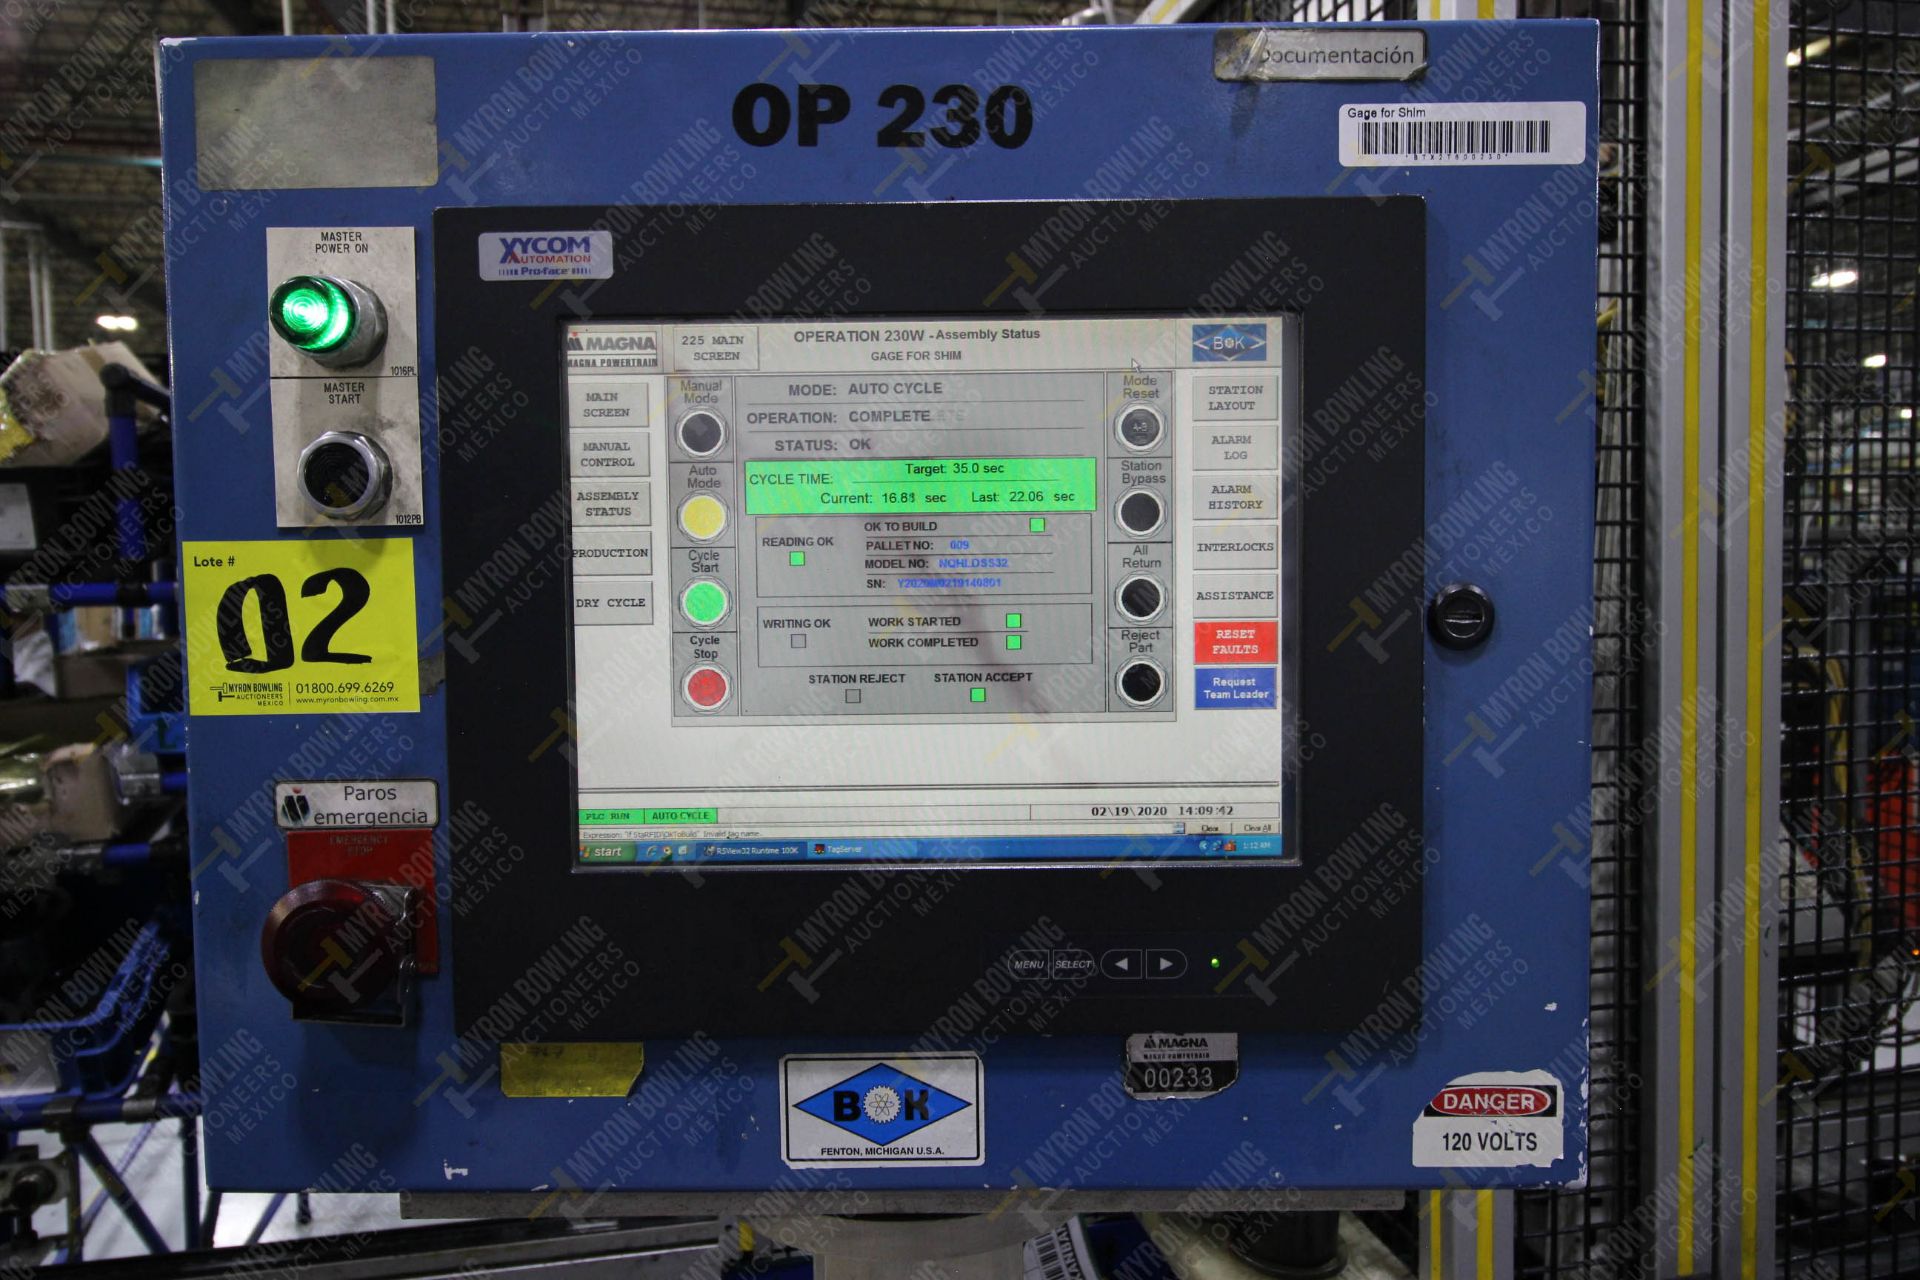 Estación automática para operación 230, para medición de gap - Image 24 of 36